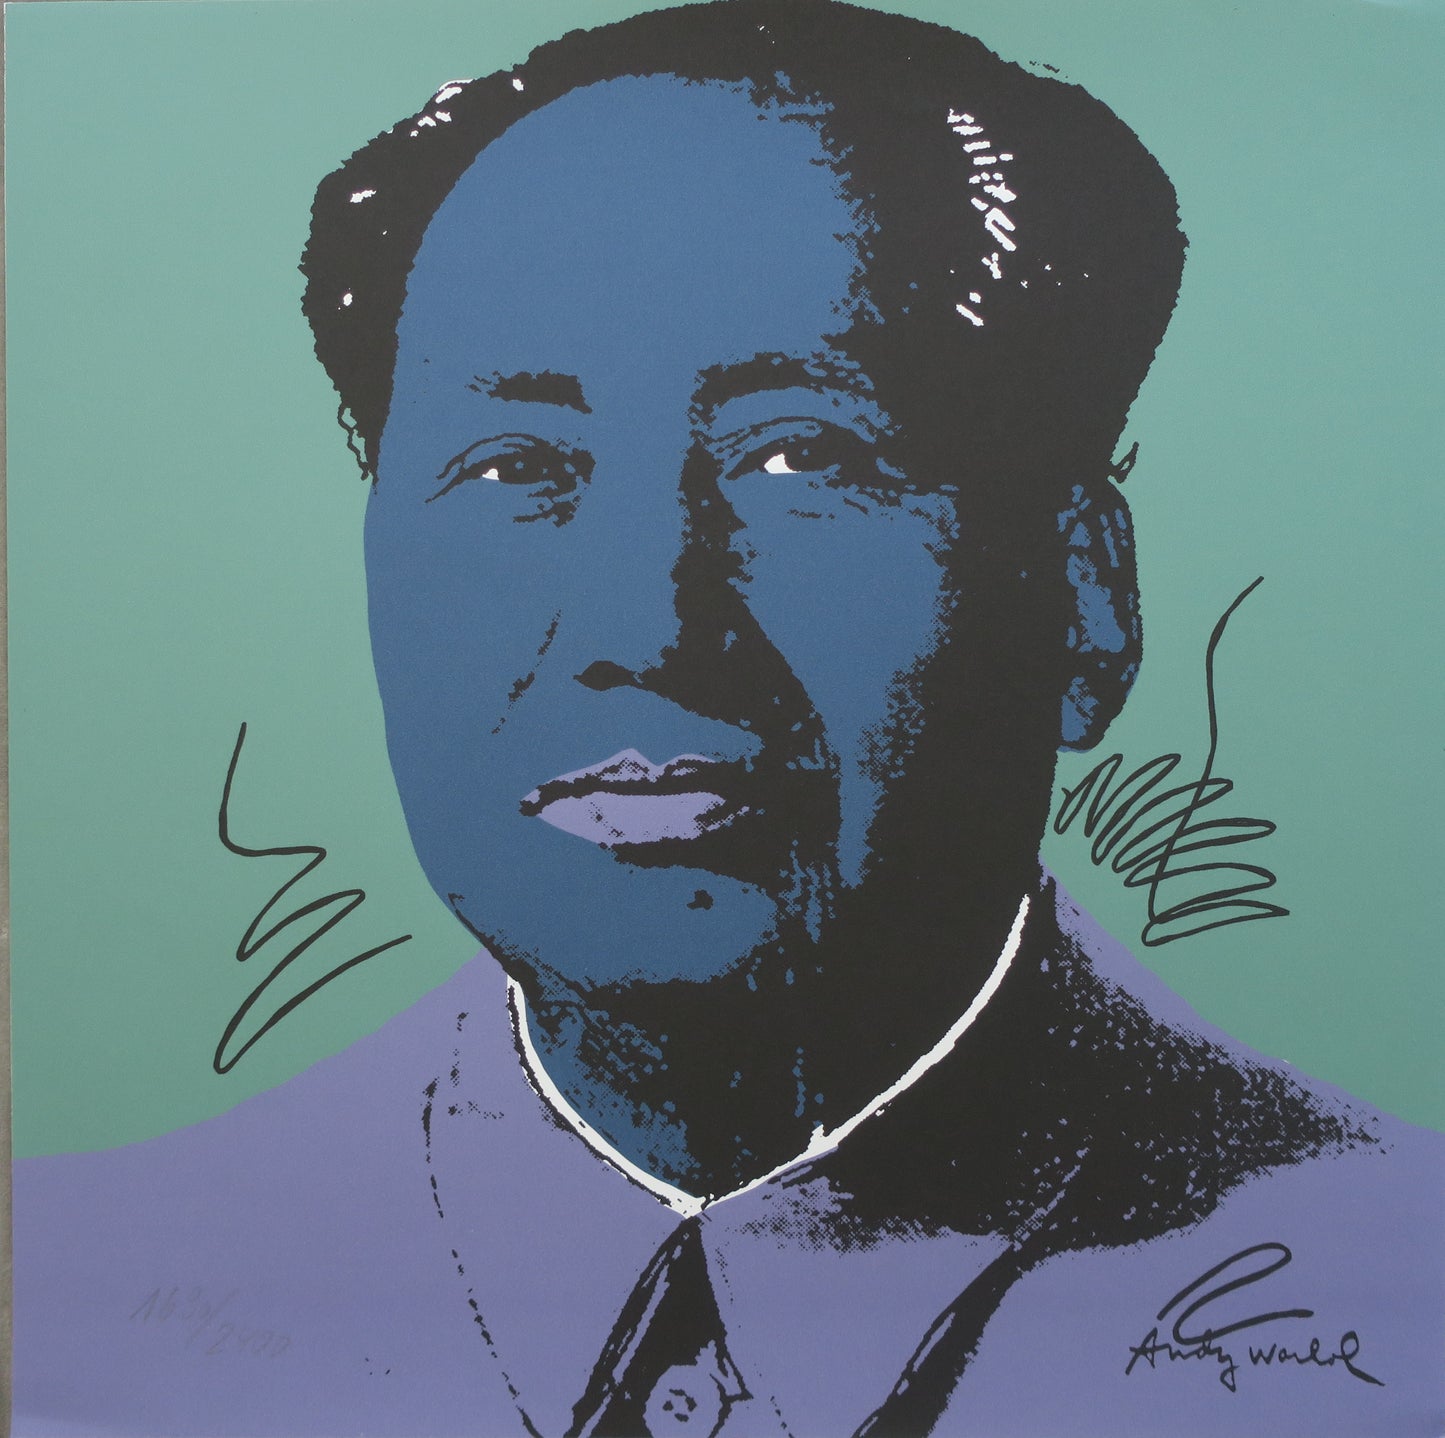 Andy Warhol Mao 90 Lirhograph